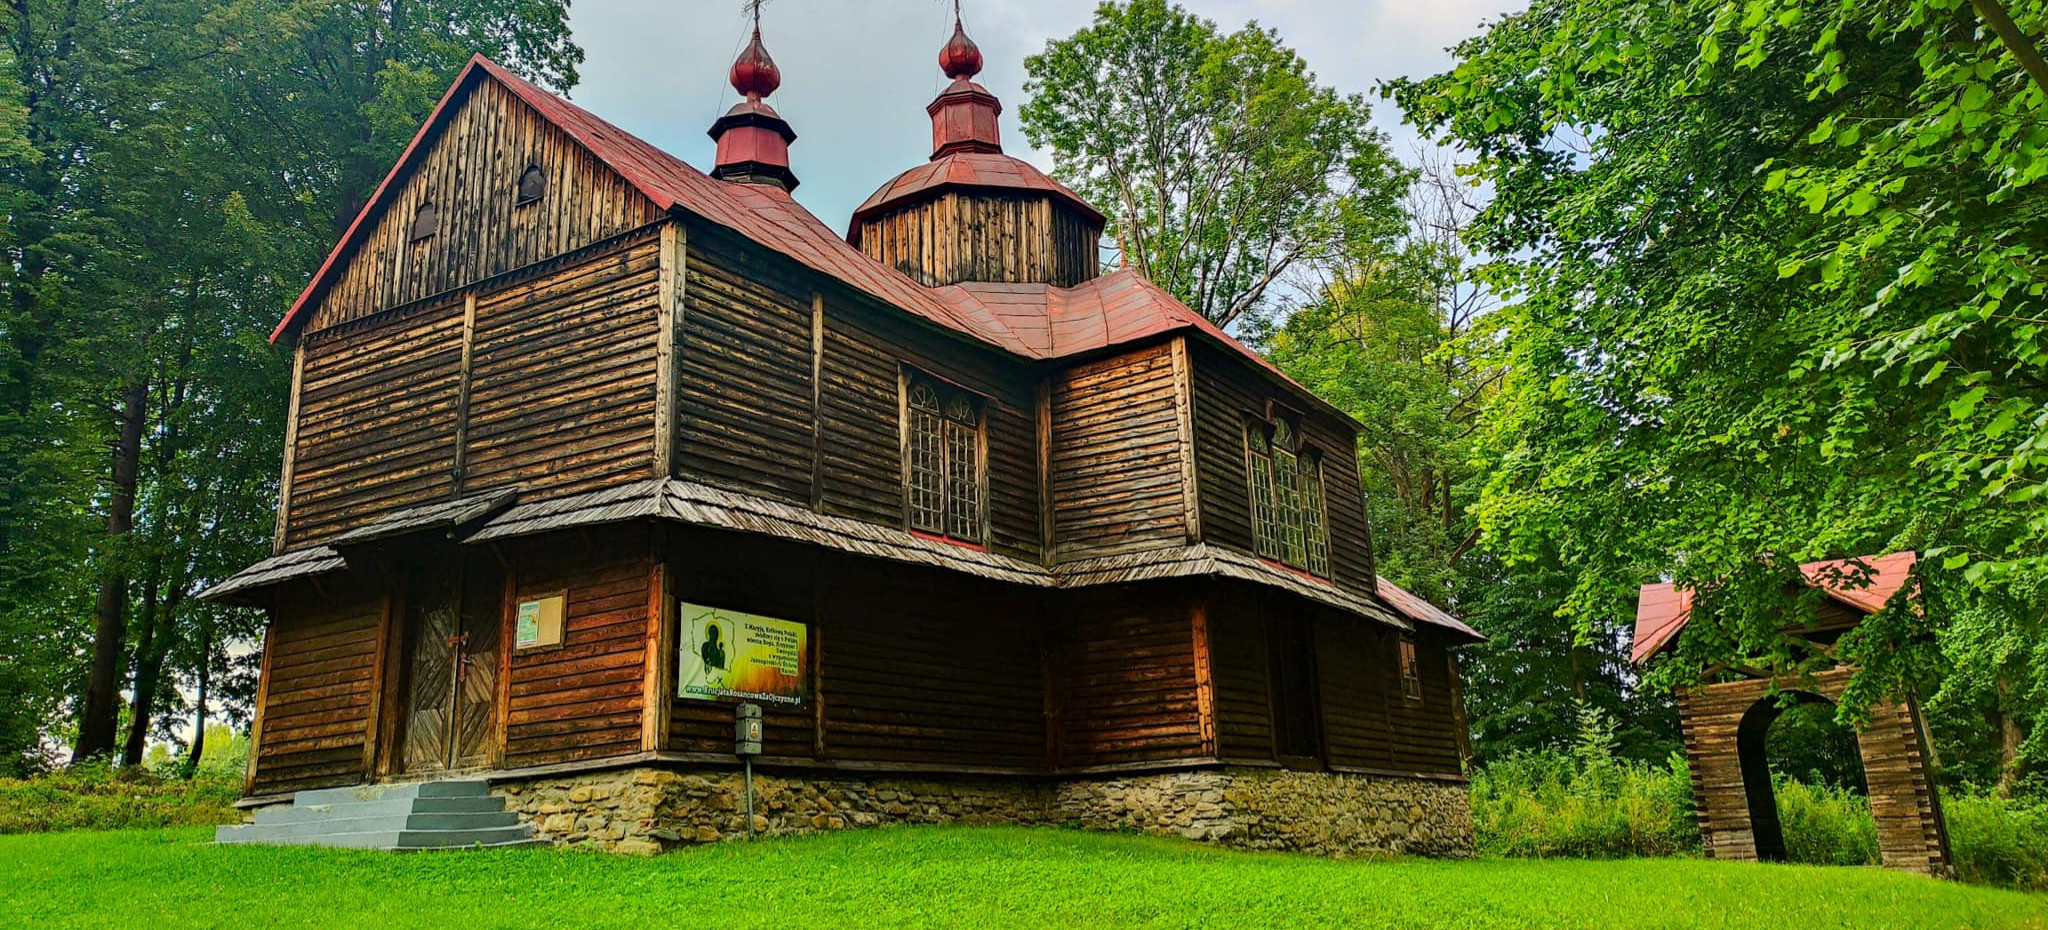 Jednym z nieodzownych elementów krajobrazu Gminy Ustrzyki Dolne są drewniane cerkwie